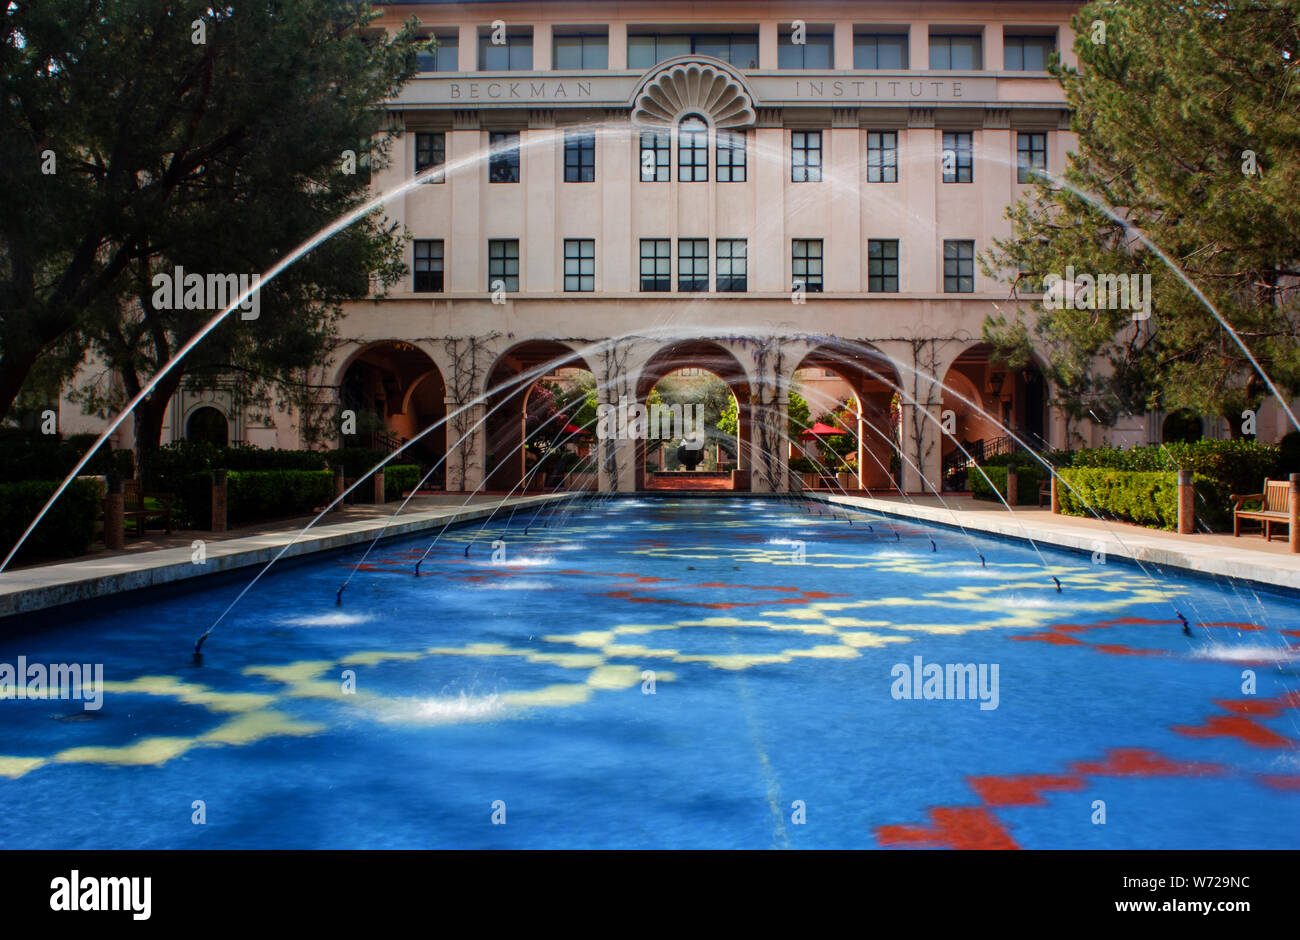 PASADENA, CA/USA - 13 Mars : Beckman Institute sur le campus de l'Institut de technologie de Californie. Caltech est une université de recherche de Pasadena, Banque D'Images